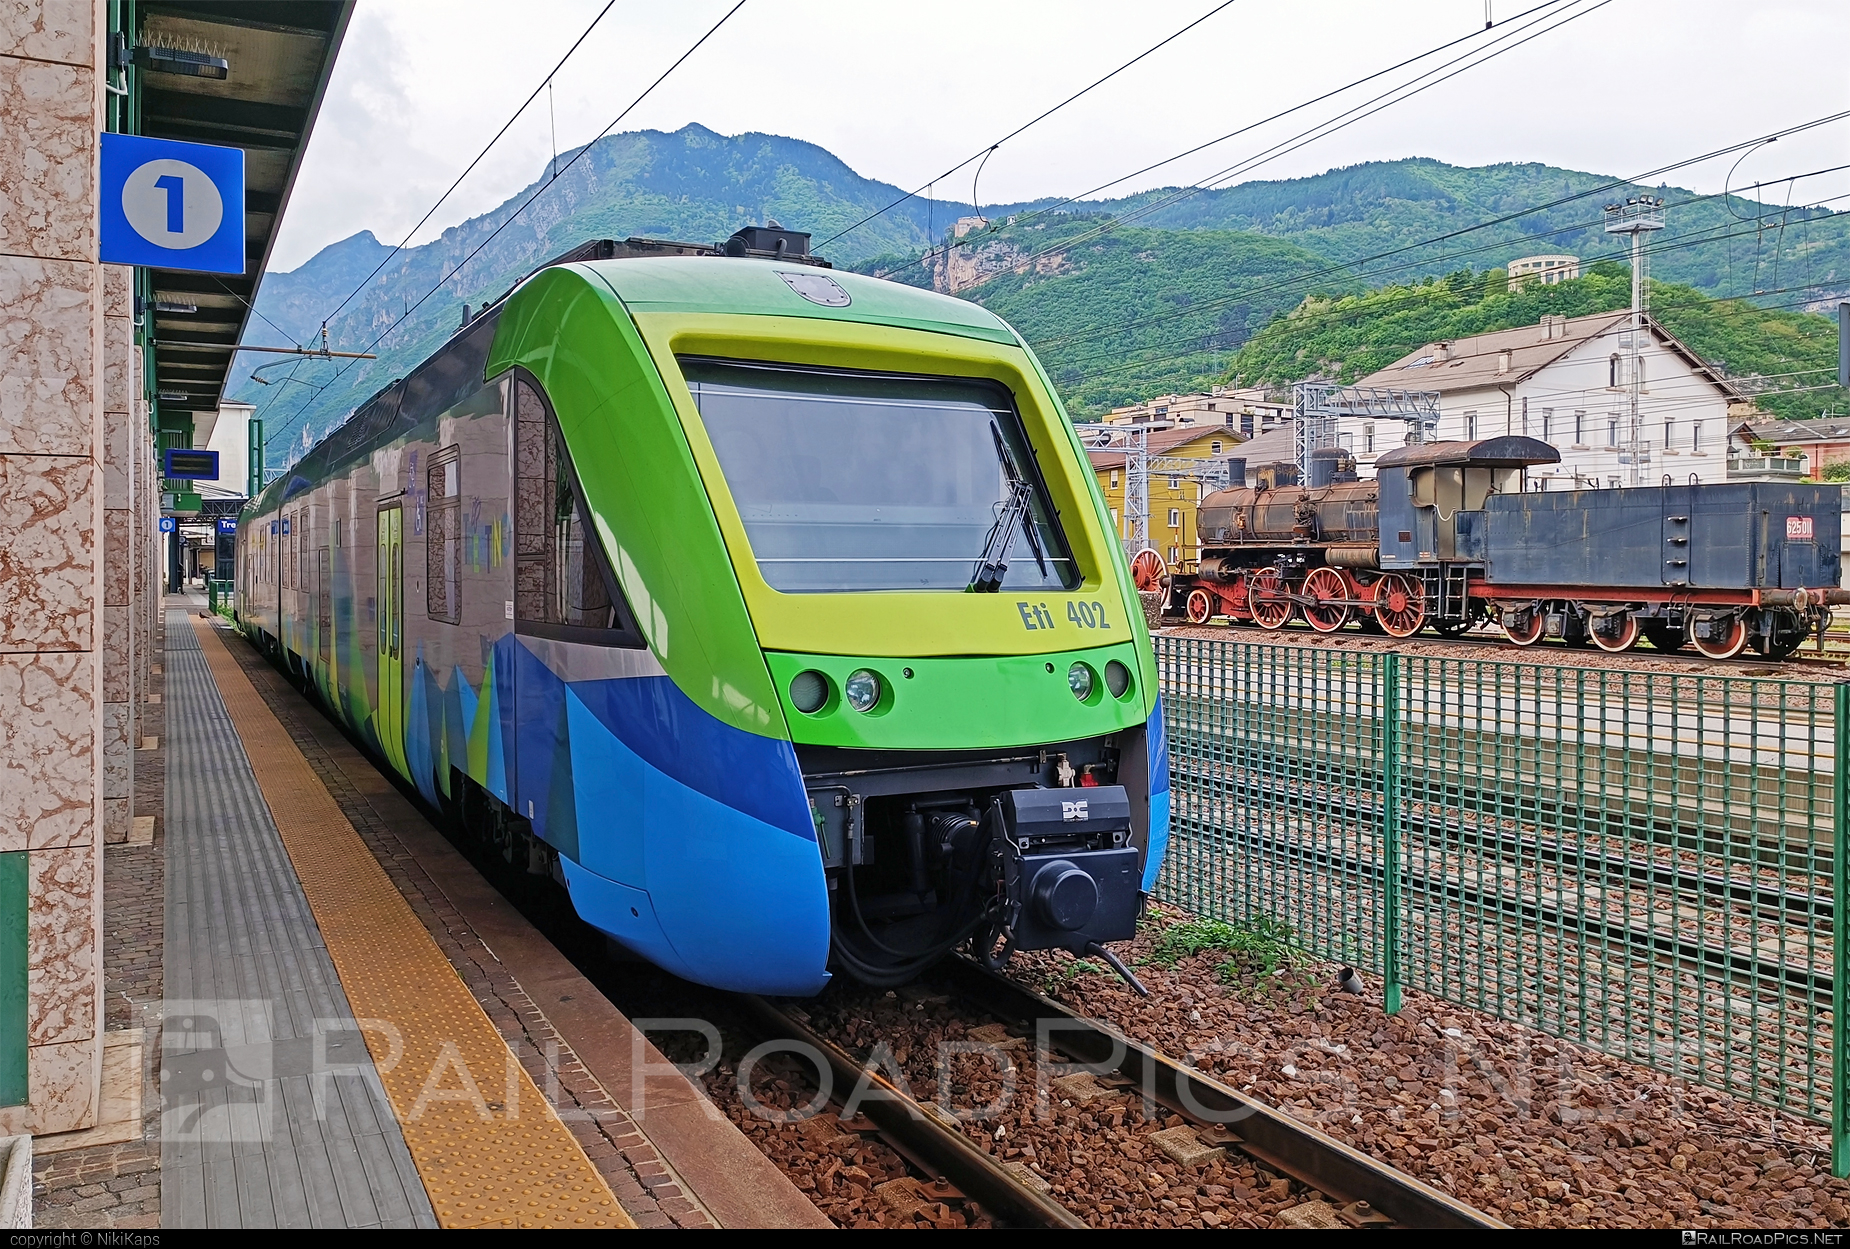 Alstom TT Class Eti 400 - Eti 402 operated by Trentino Trasporti S.p.A #alstom #alstomEti400 #eti400 #trentino #trentinoTrasporti #trentinoTrasportiSpA #ttClassEti400 #ttEti400